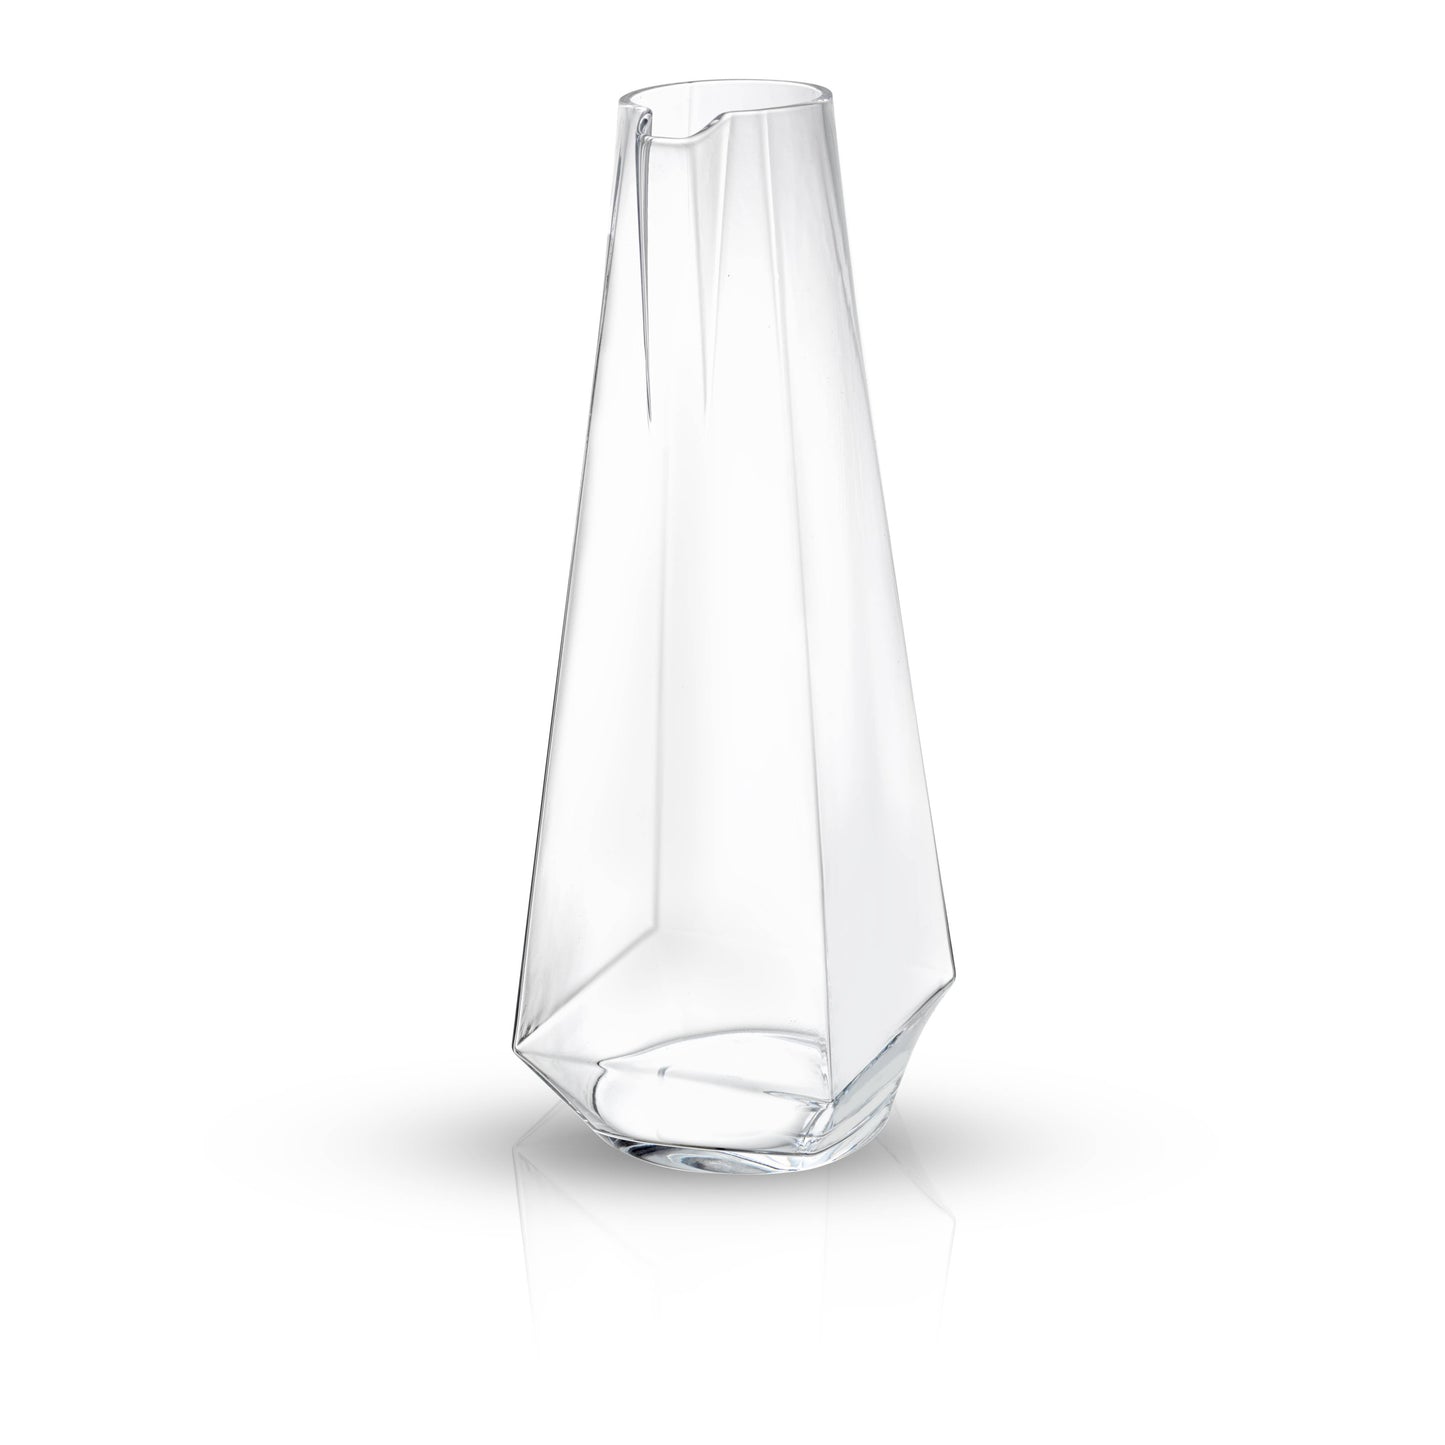 JoyJolt - Infiniti Glass Pitcher 43 Oz: Lead-Free Crystal